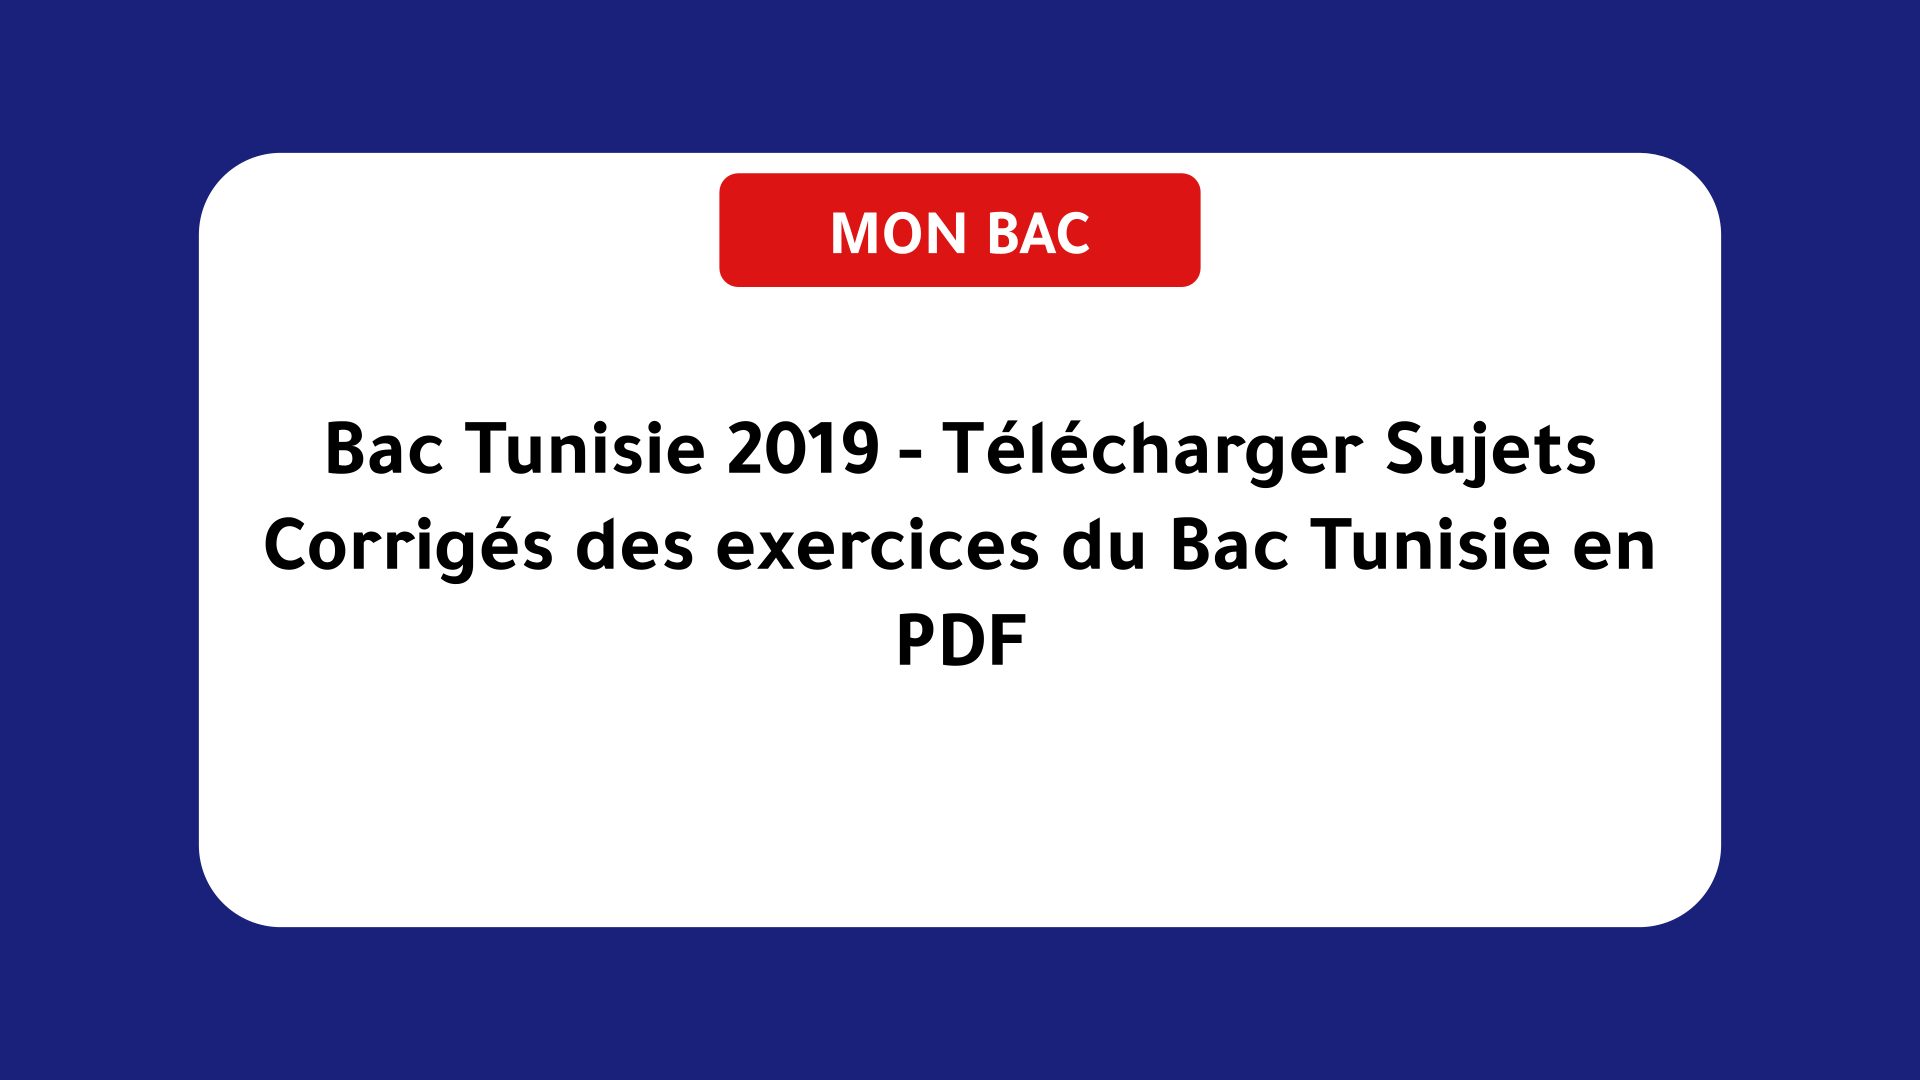 Bac Tunisie 2019 - Télécharger Sujets Corrigés des exercices du Bac Tunisie en PDF